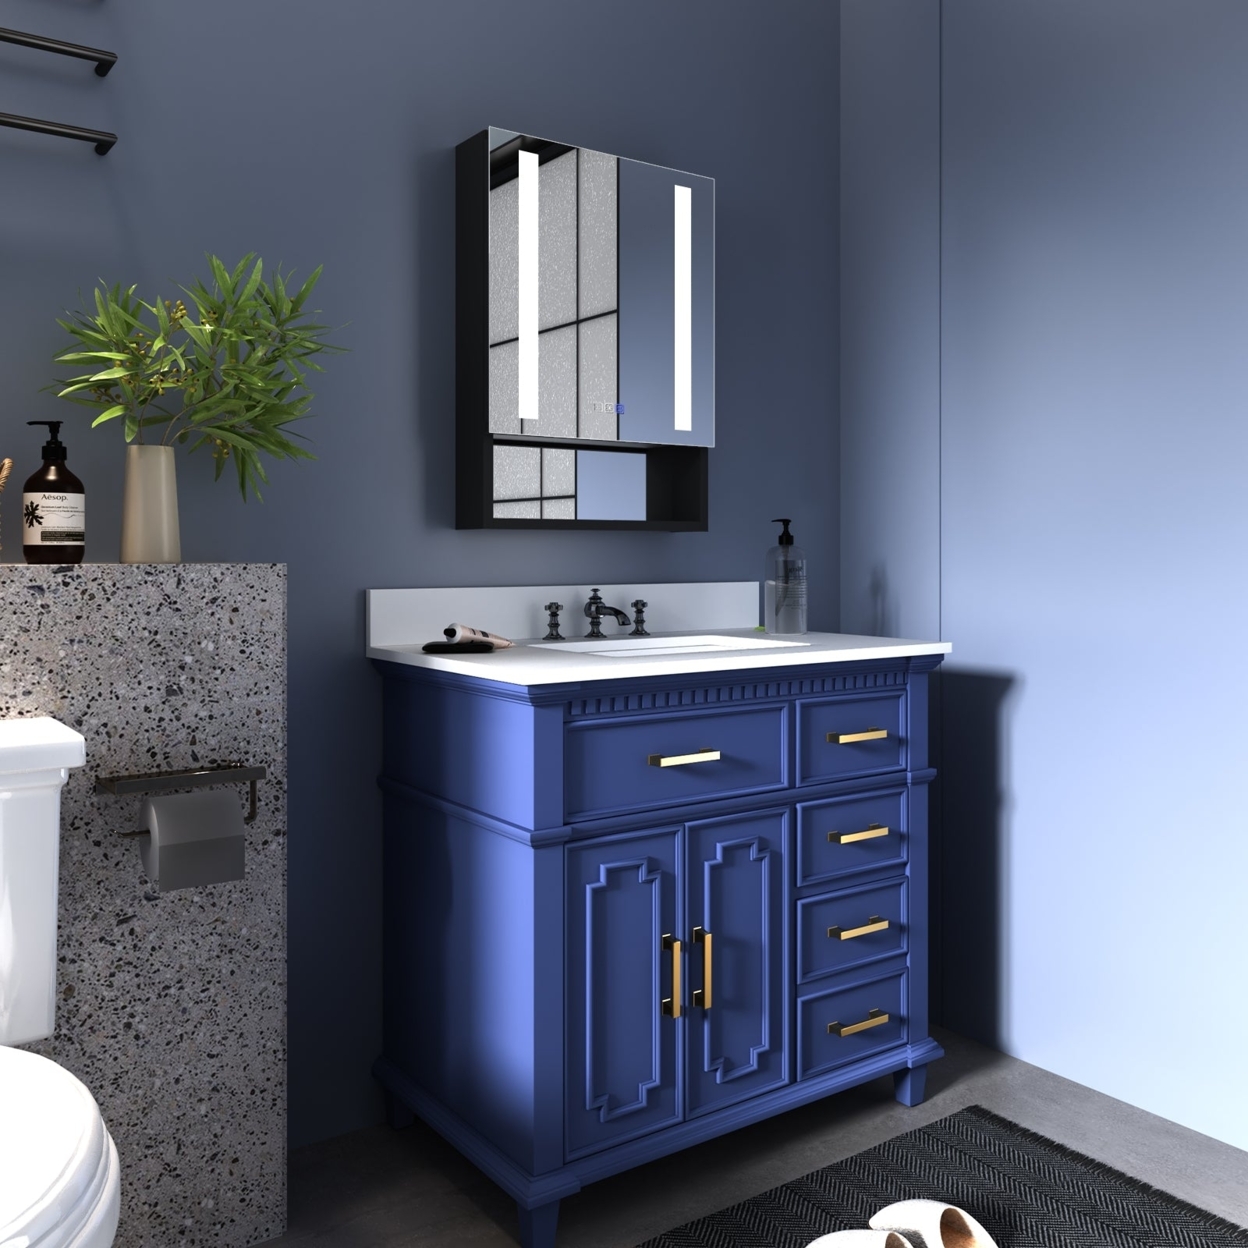 ExBrite 20 x 28 inch Bathroom Vanity Medicine Cabinet with Lights Recessed or Surface Mount,Defog, Stepless Dimming - Door Left Open